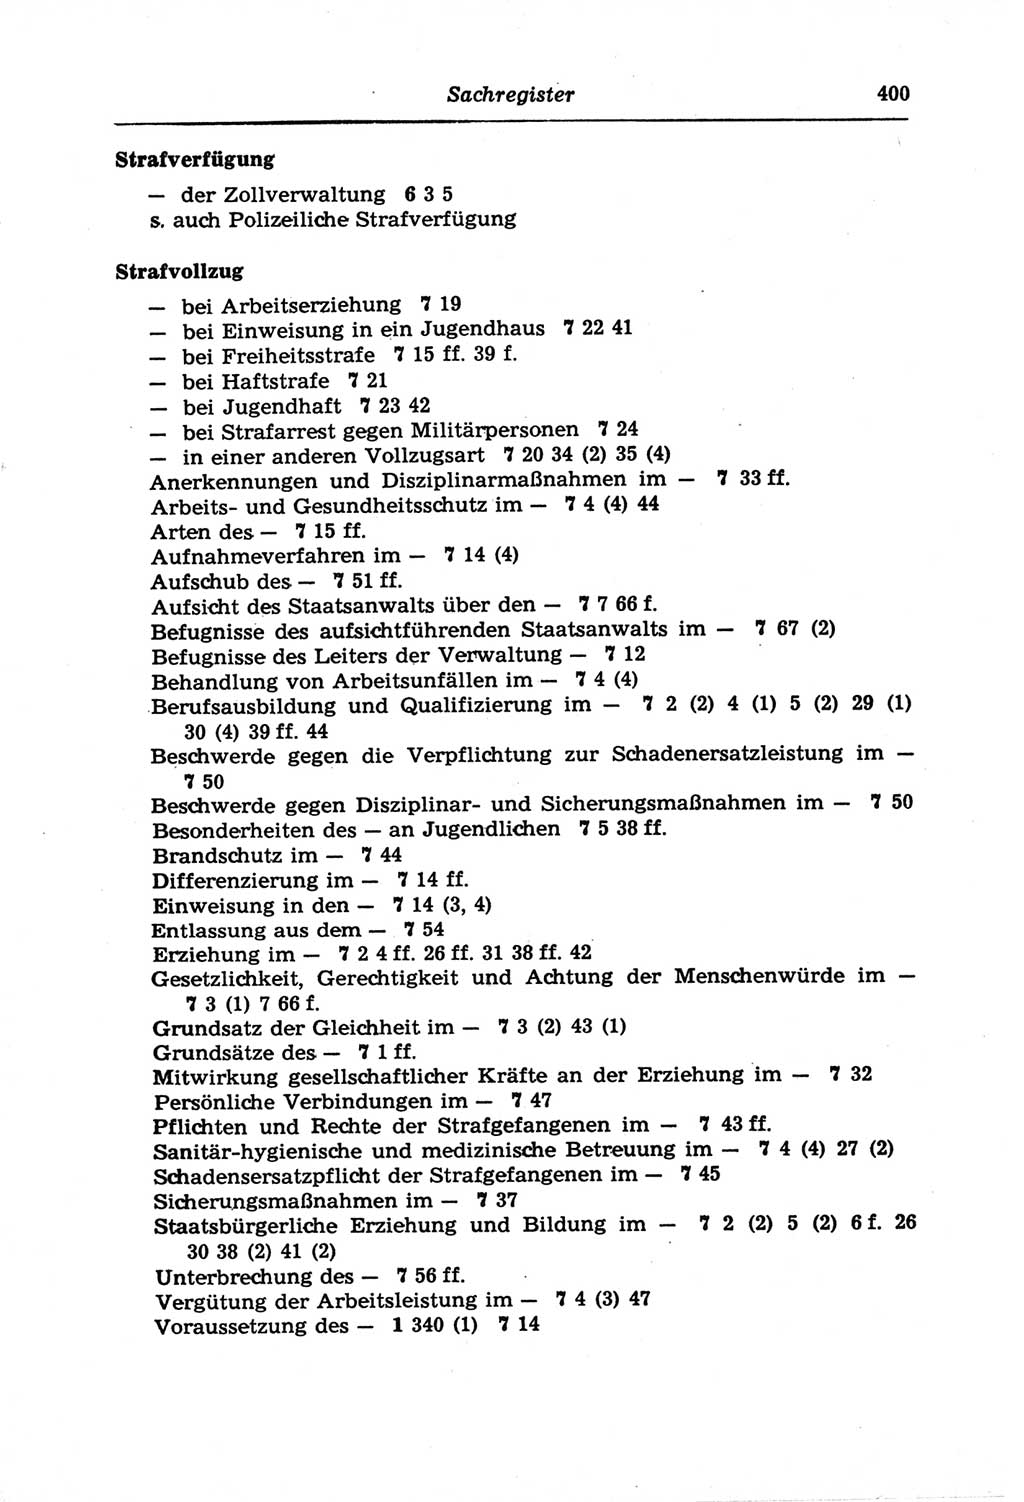 Strafprozeßordnung (StPO) der Deutschen Demokratischen Republik (DDR) und angrenzende Gesetze und Bestimmungen 1968, Seite 400 (StPO Ges. Bstgn. DDR 1968, S. 400)